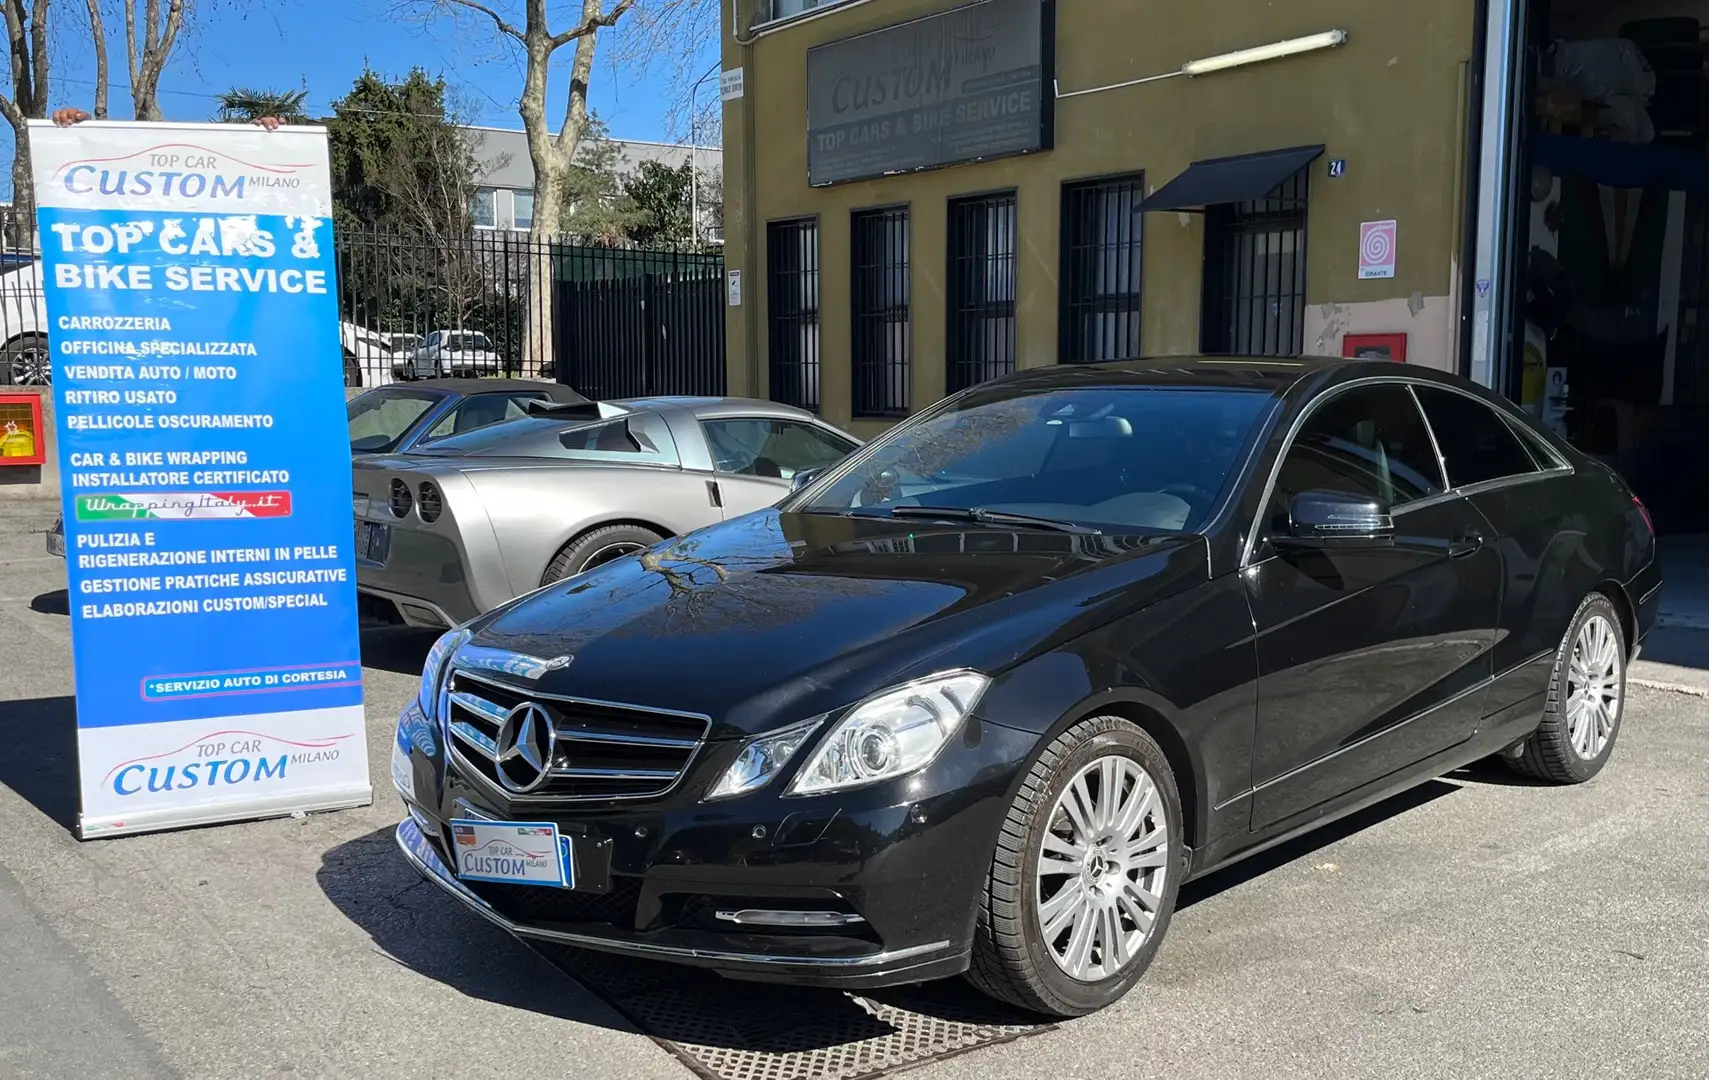 usato Mercedes-Benz E 200 Coupé a Cinisello Balsamo - Milano per € 12.500,-